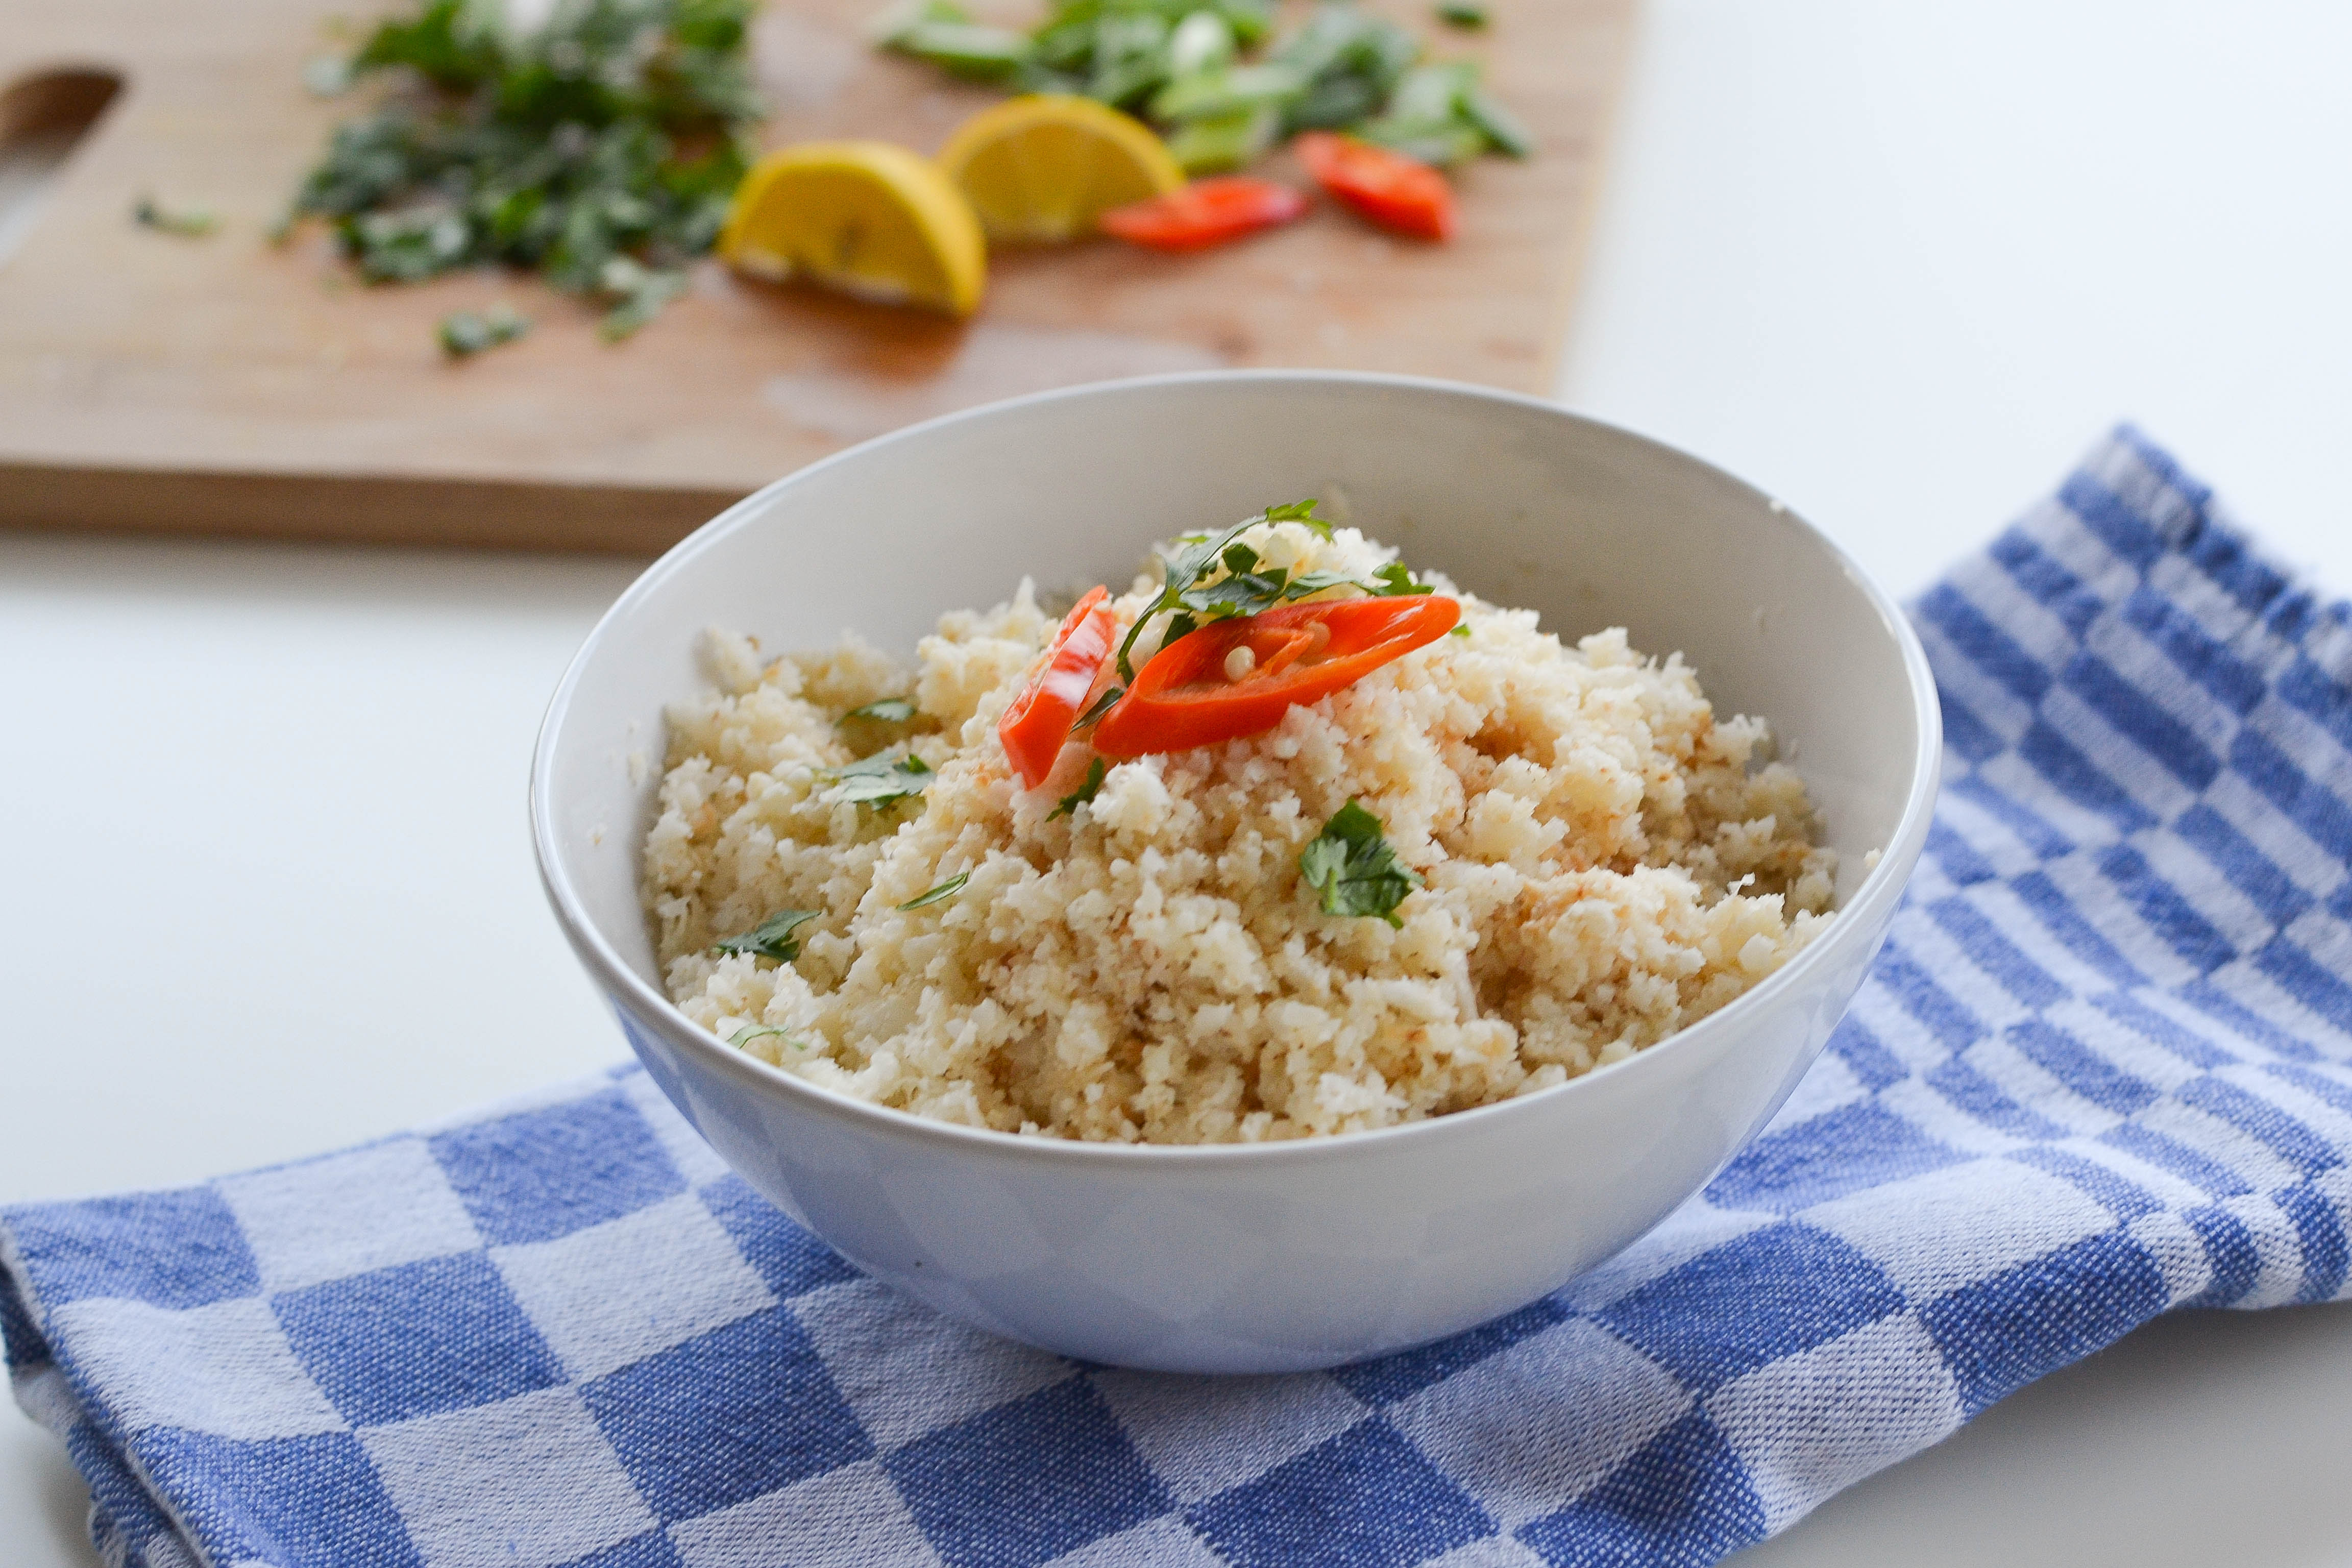 ما هي طريقة عمل أرز القرنبيط ؟